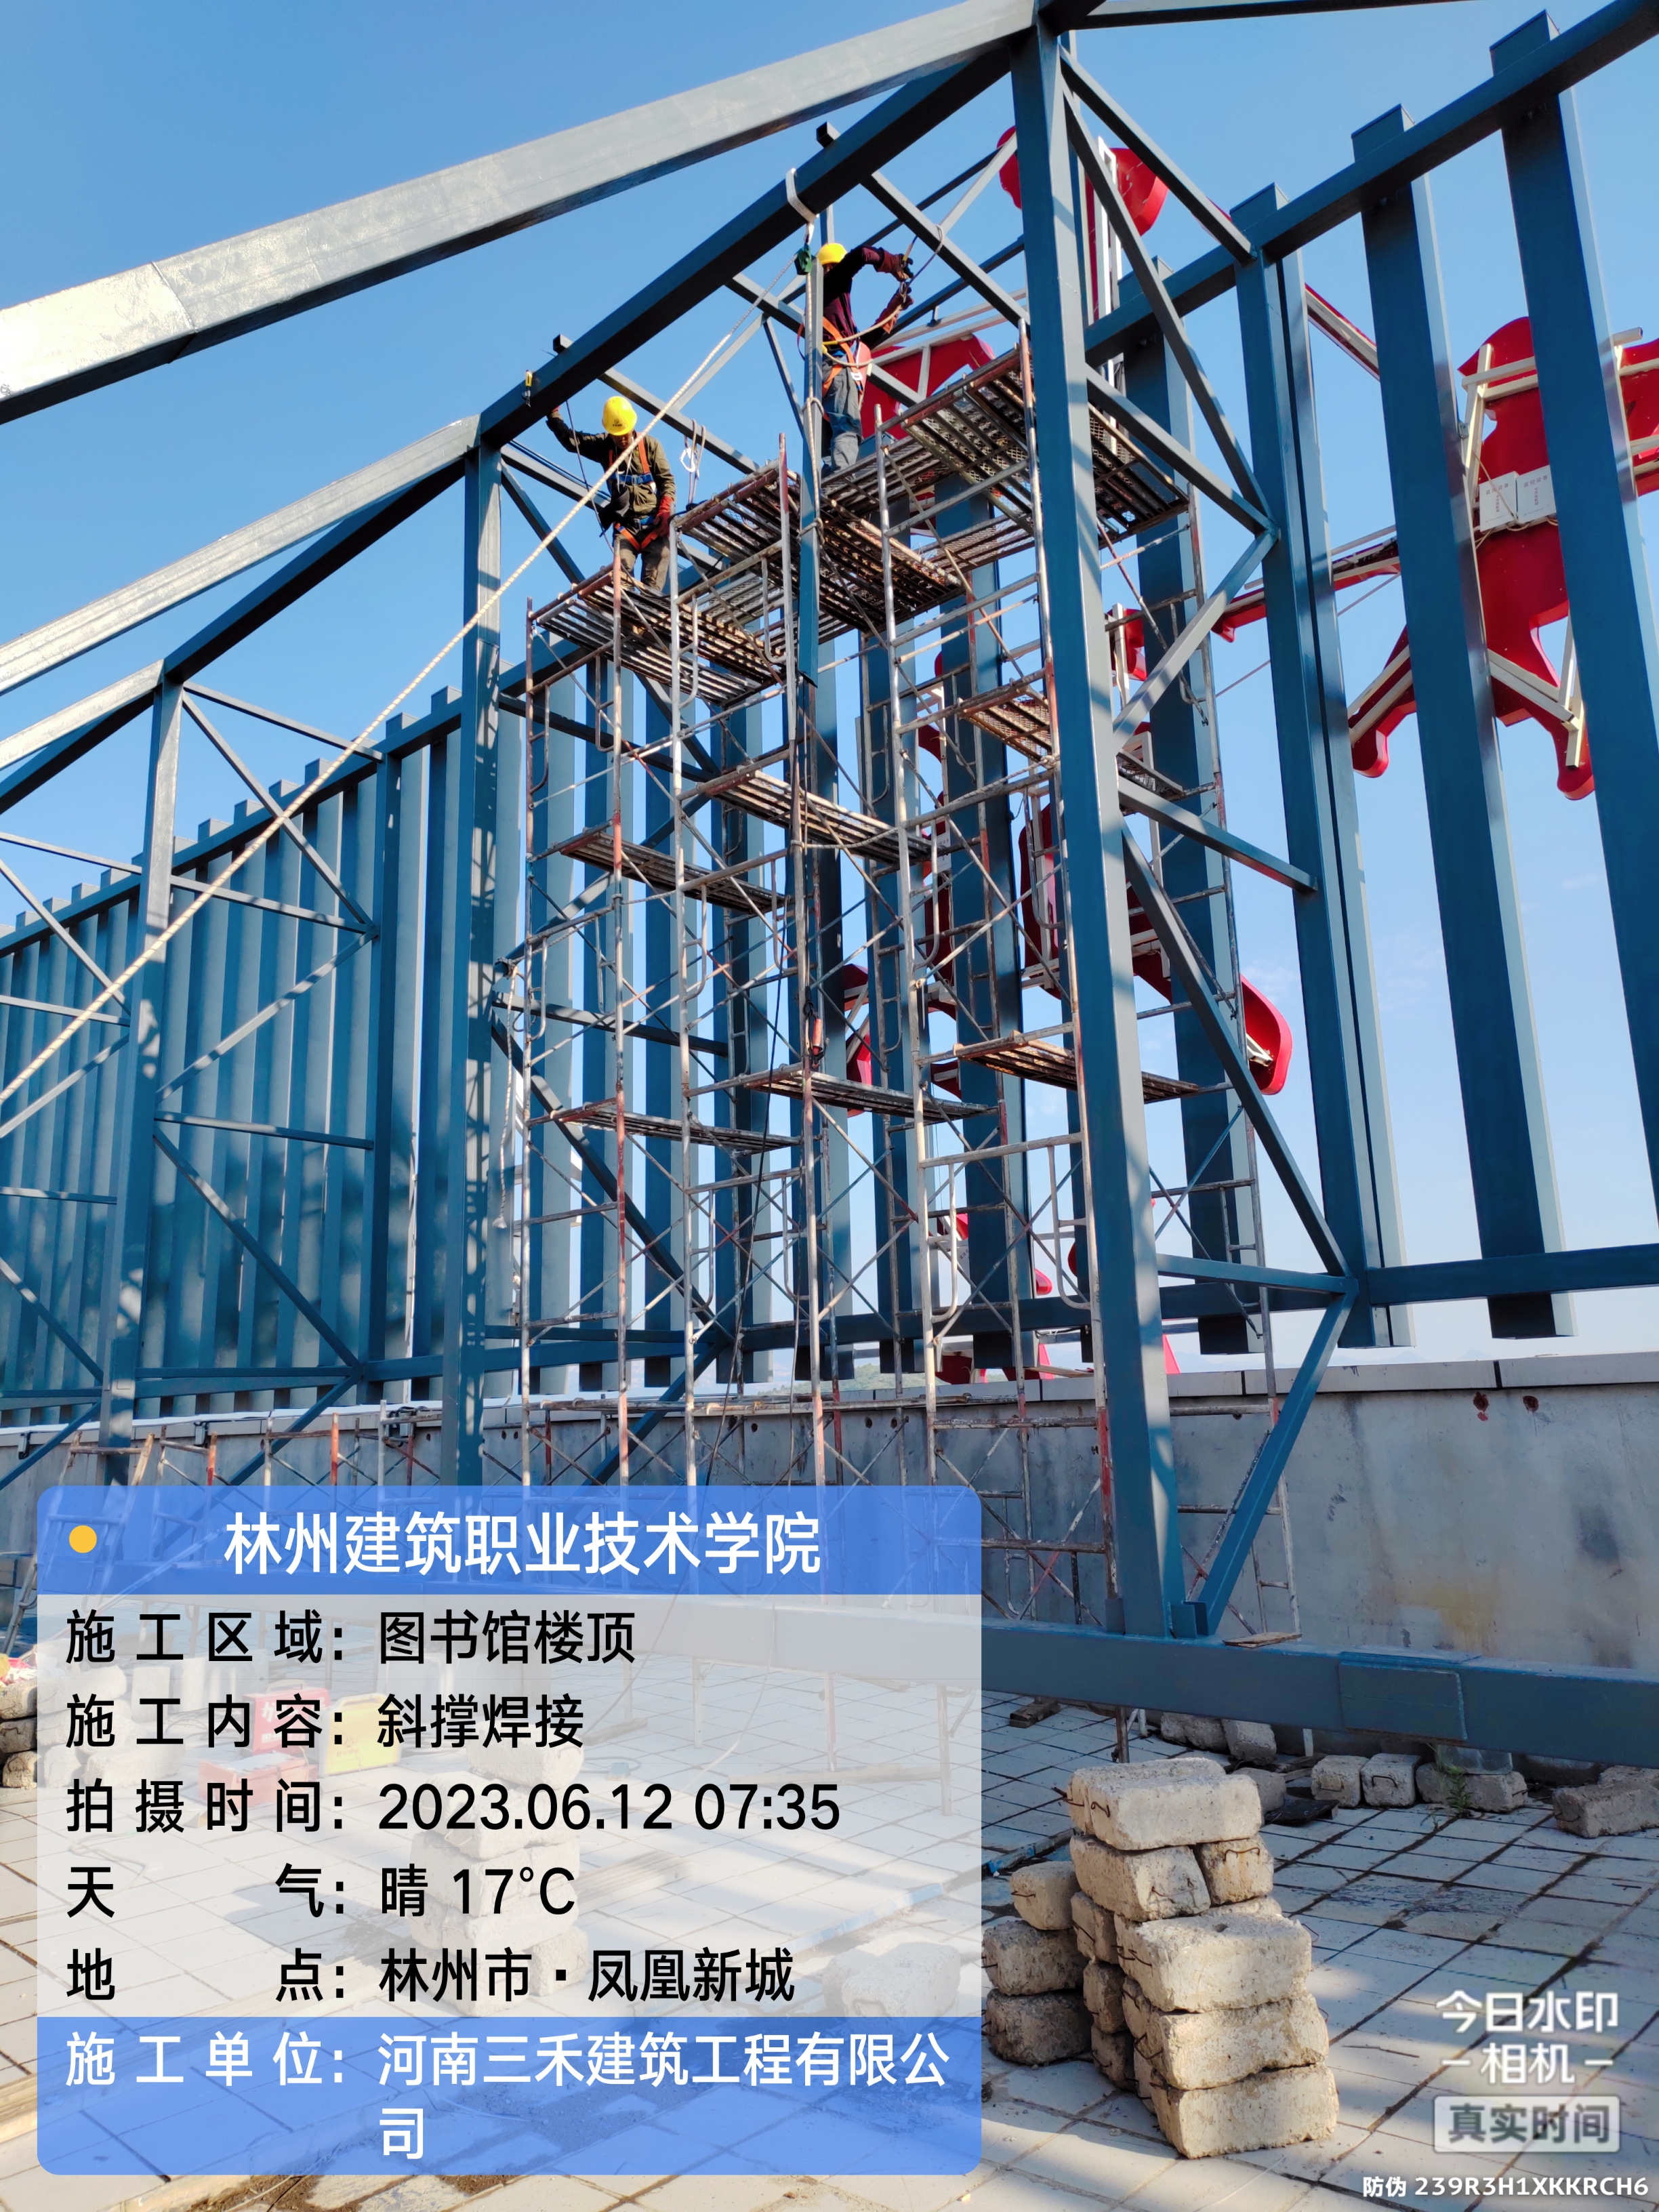 林州建筑职业技术学院图书馆LOGO改造工程(图6)